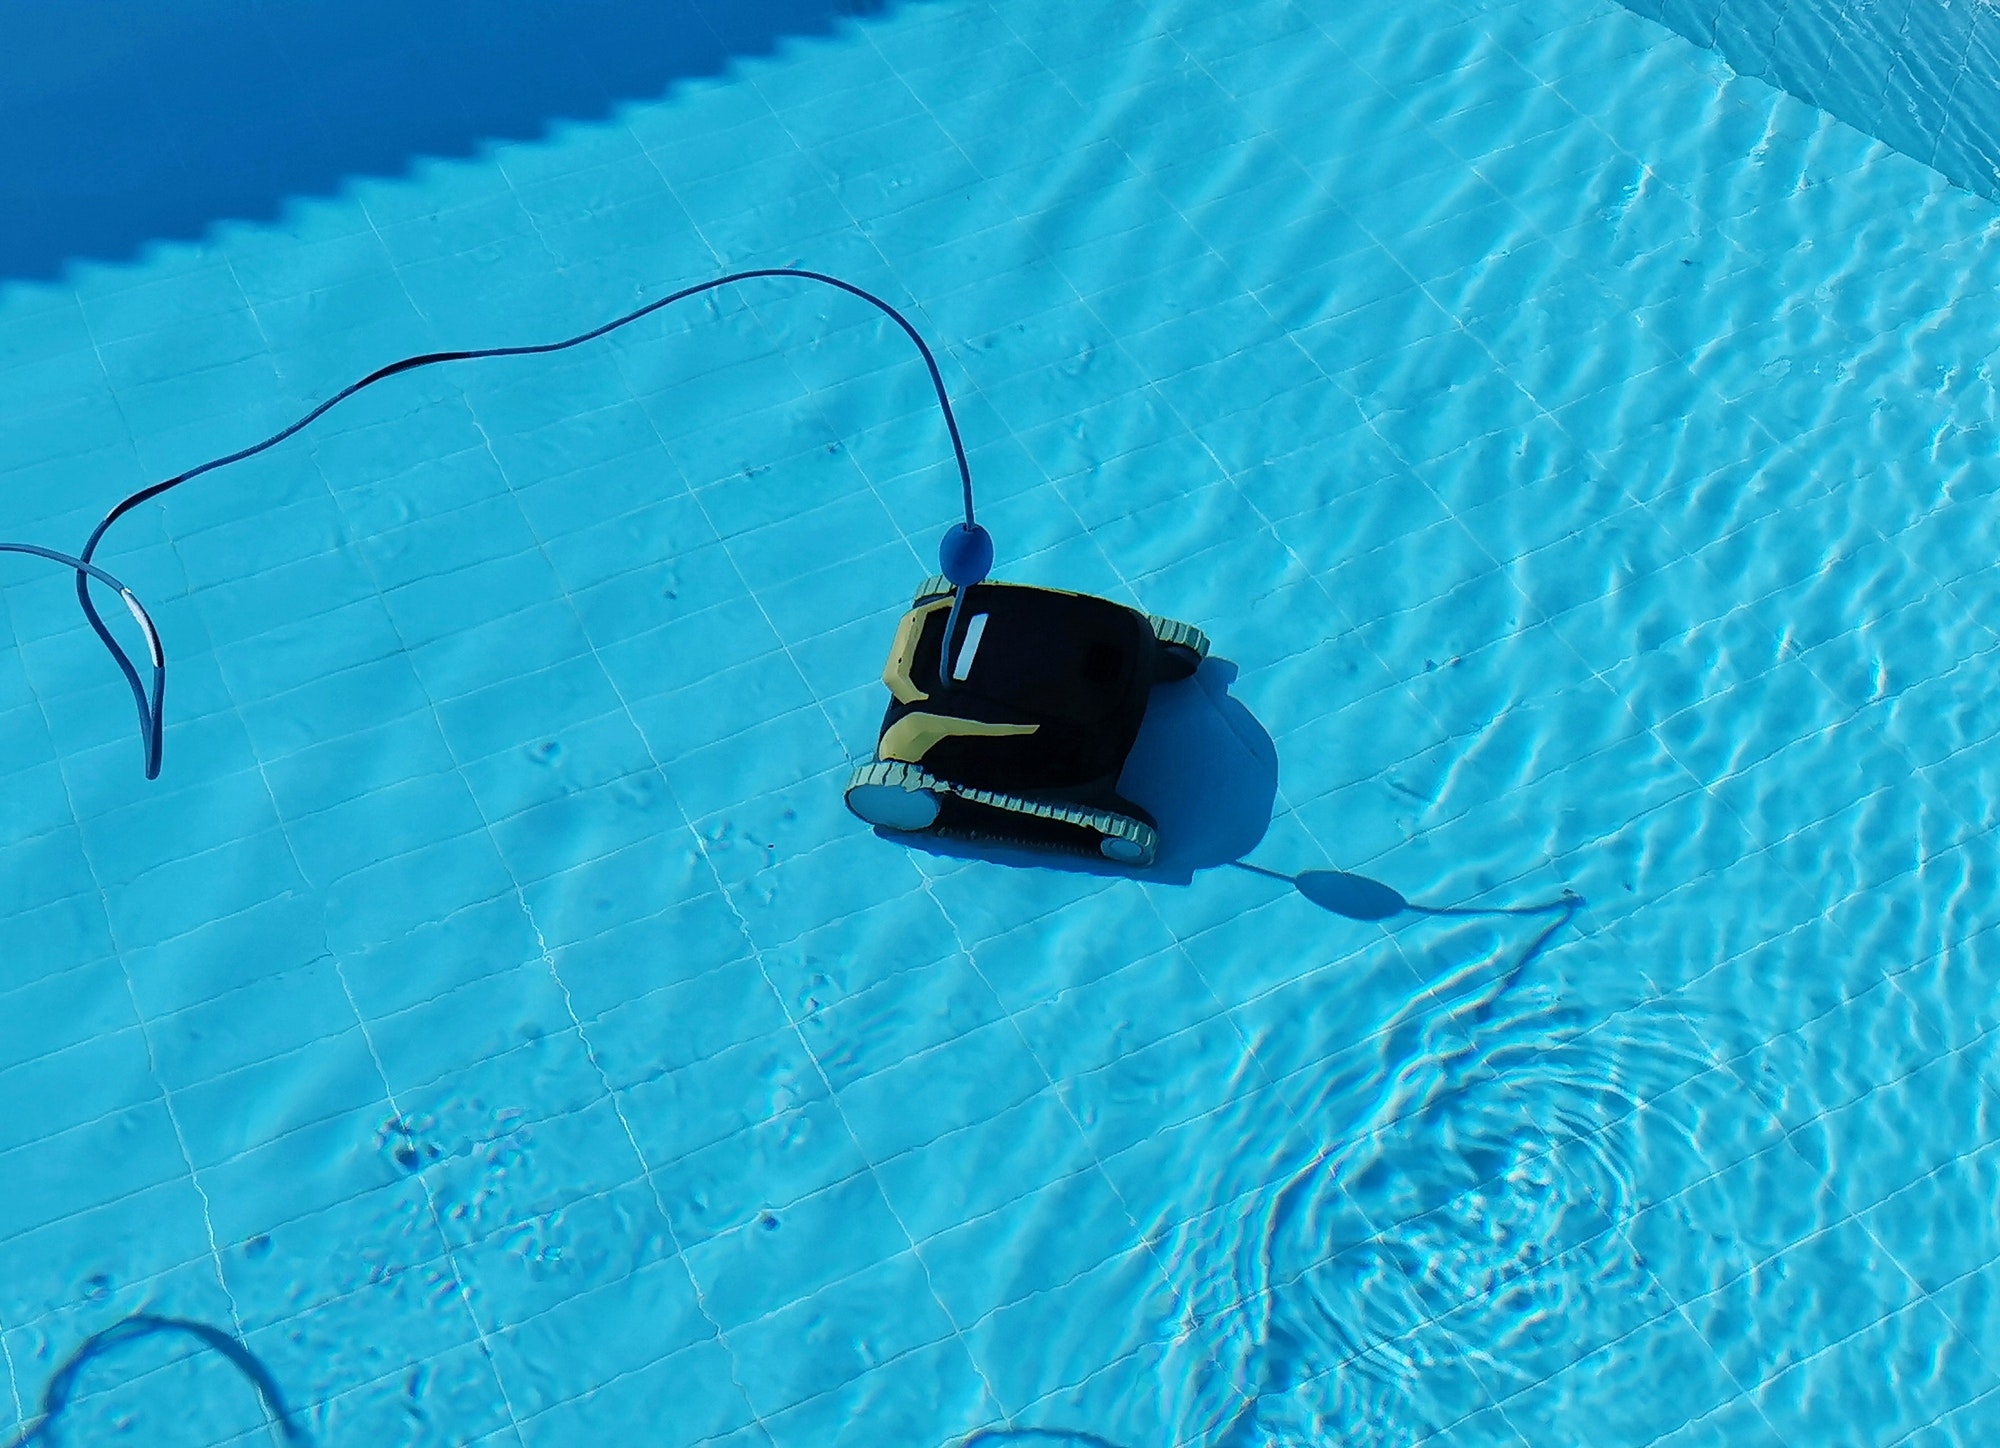 Robotic pool cleaner, underwater, blue.